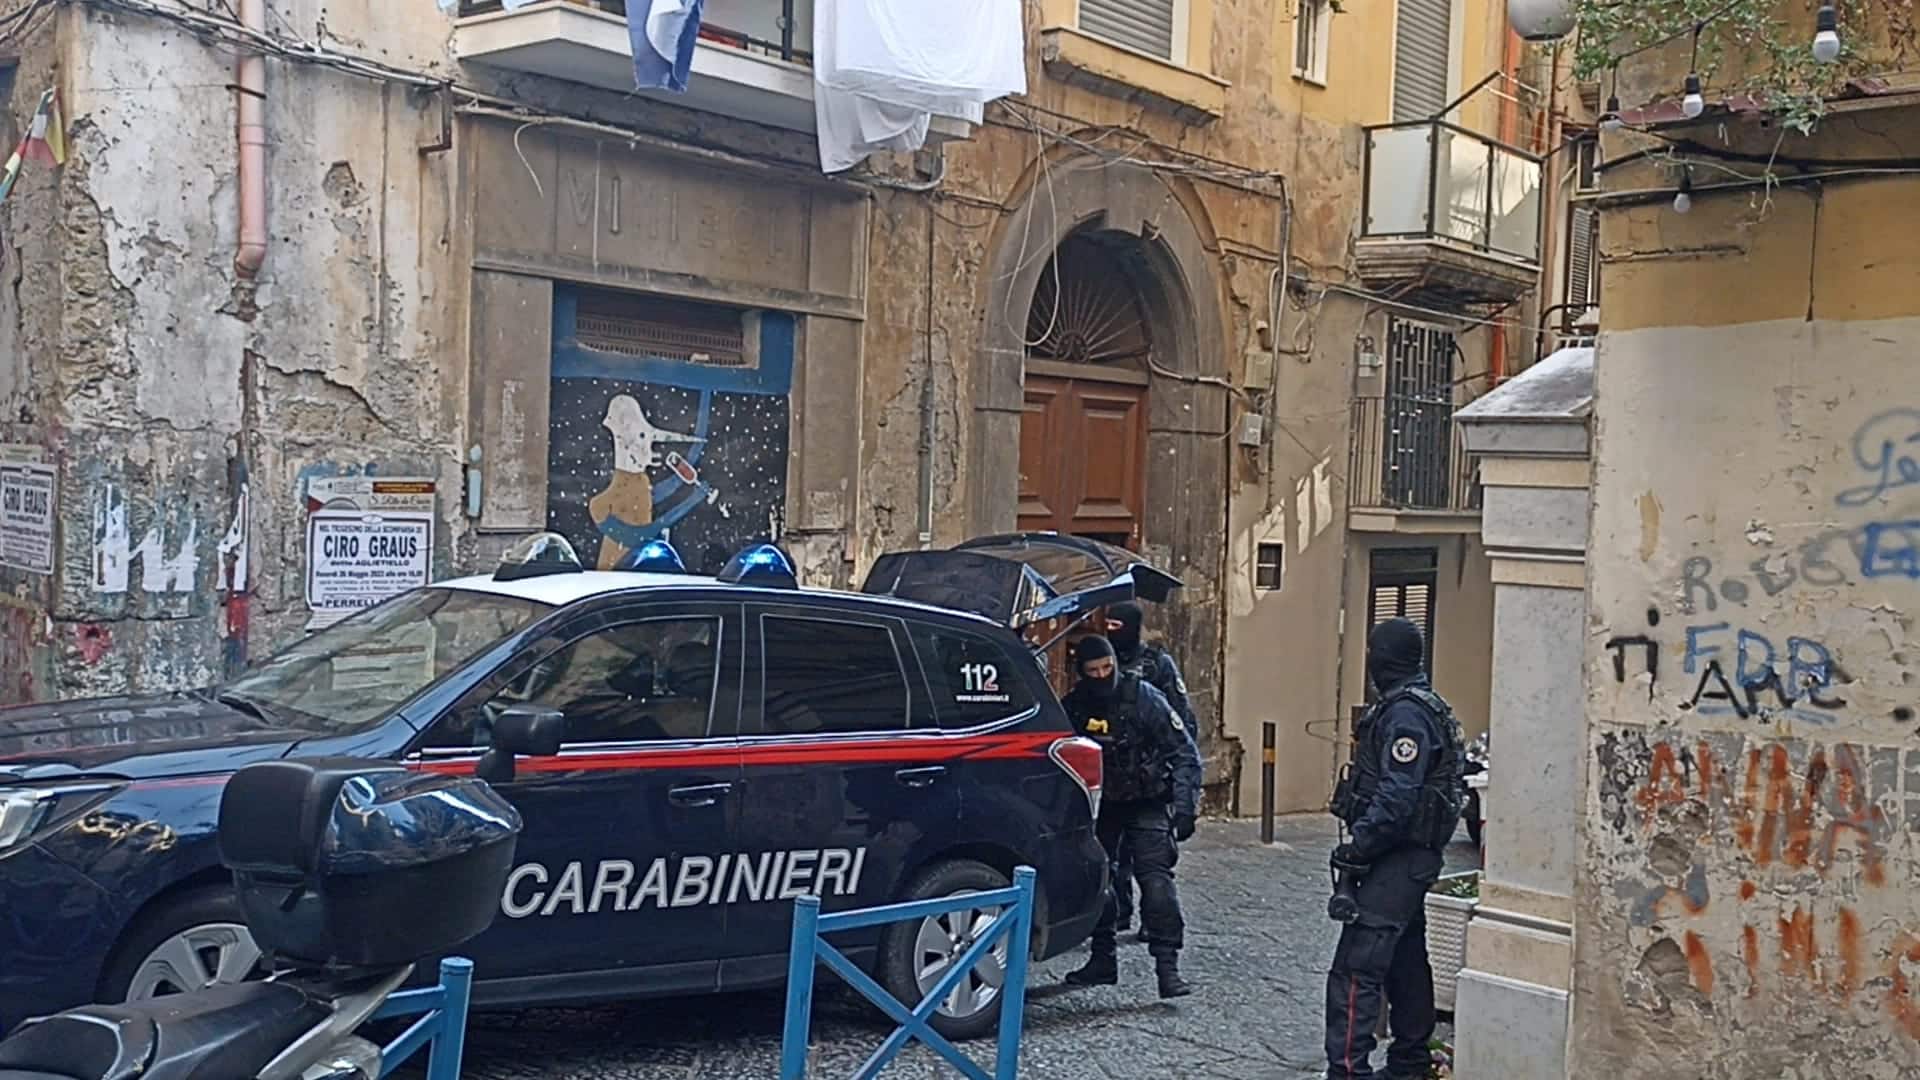 A Napoli la guerra di camorra sta esplodendo in 4 rioni della città